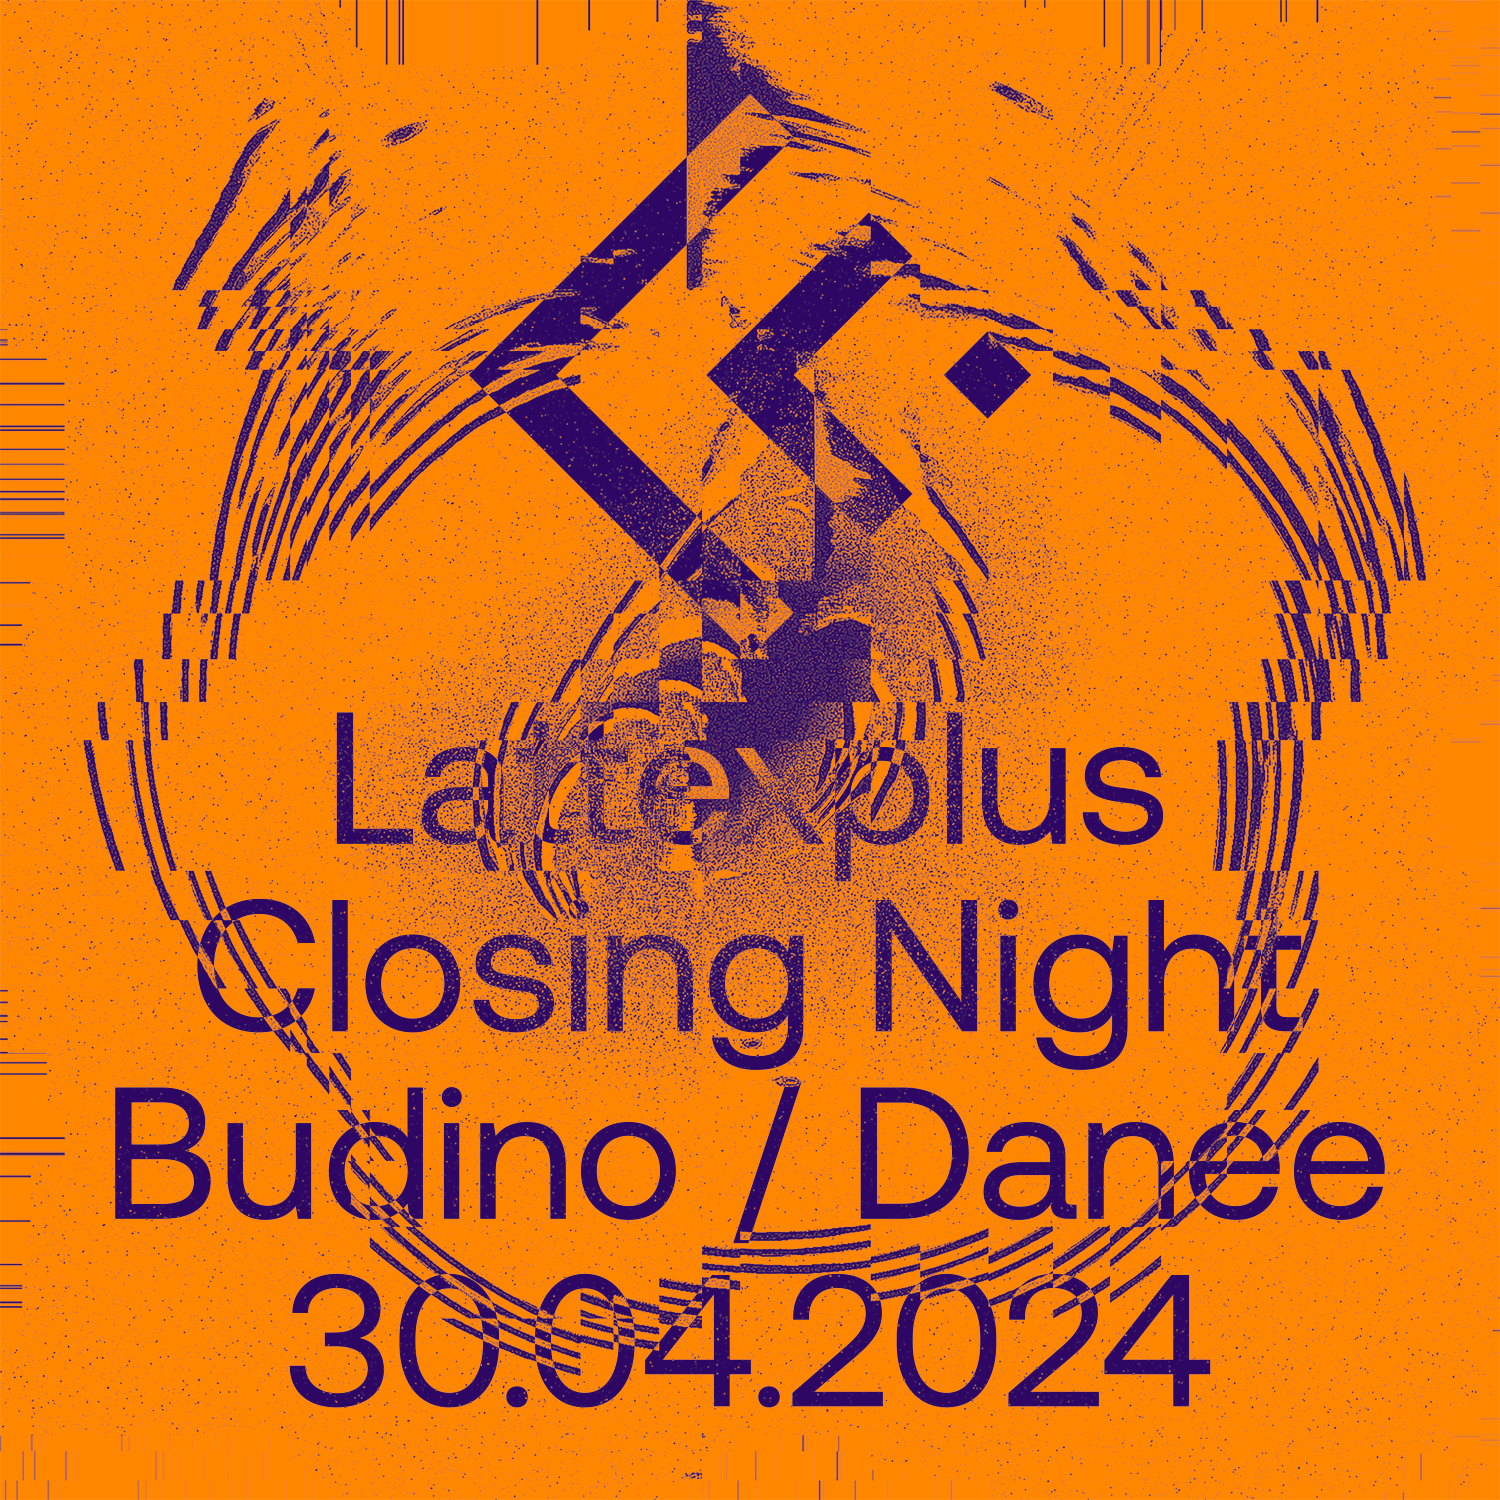 Lattexplus Closing Night with Budino - Página frontal